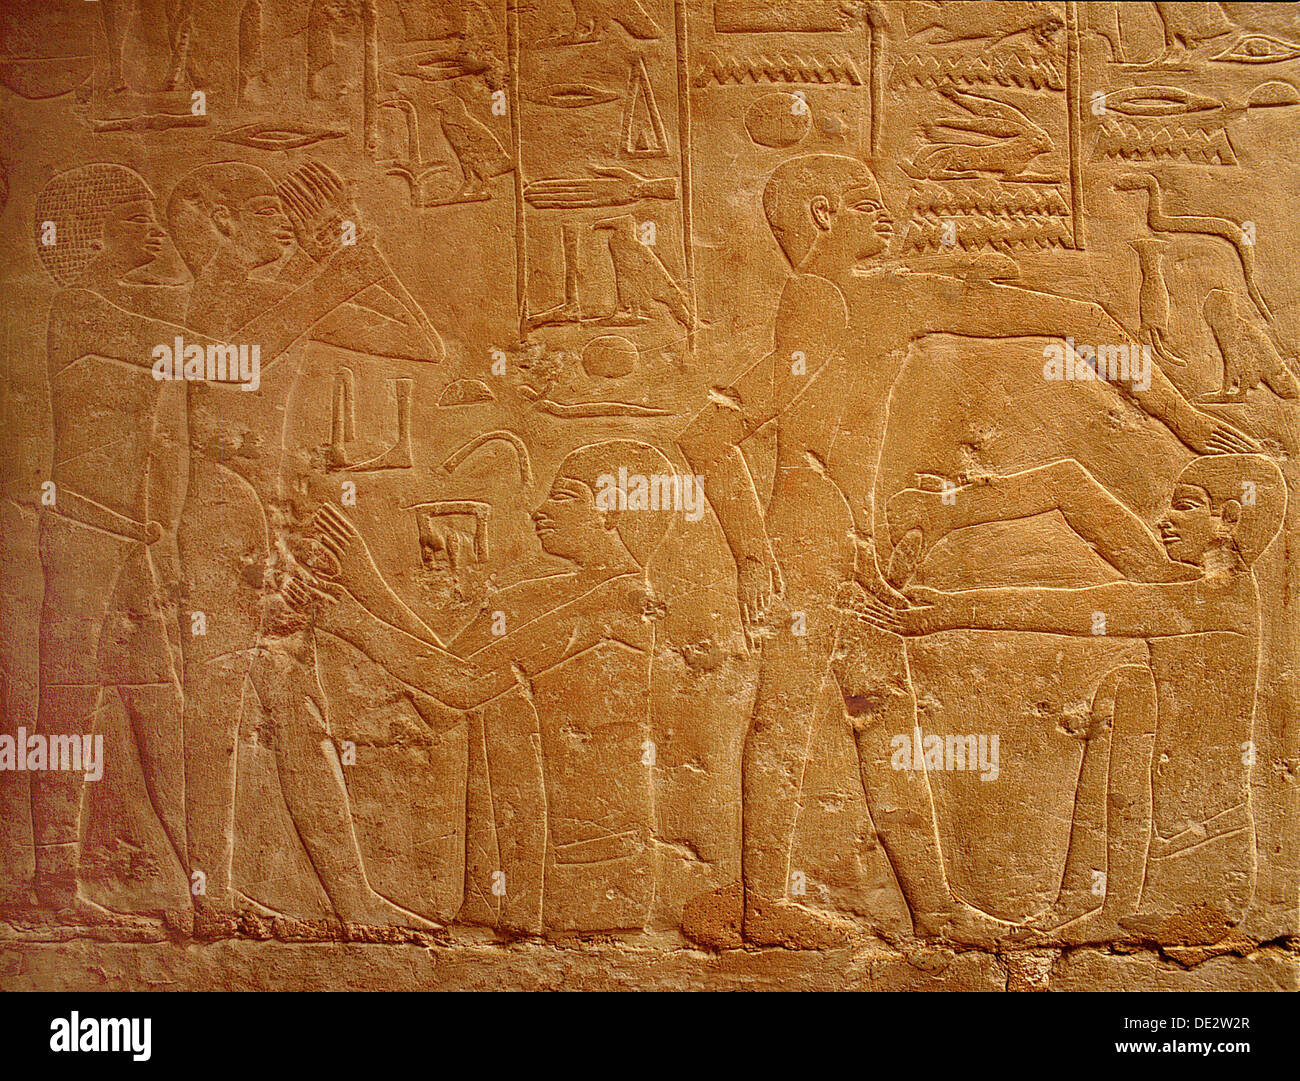 un-detail-d-un-clapet-dans-le-tombeau-d-ankhmahor-a-saqqarah-representant-un-pretre-l-execution-de-la-circoncision-rituelle-sur-un-jeune-garcon-de2w2r.jpg